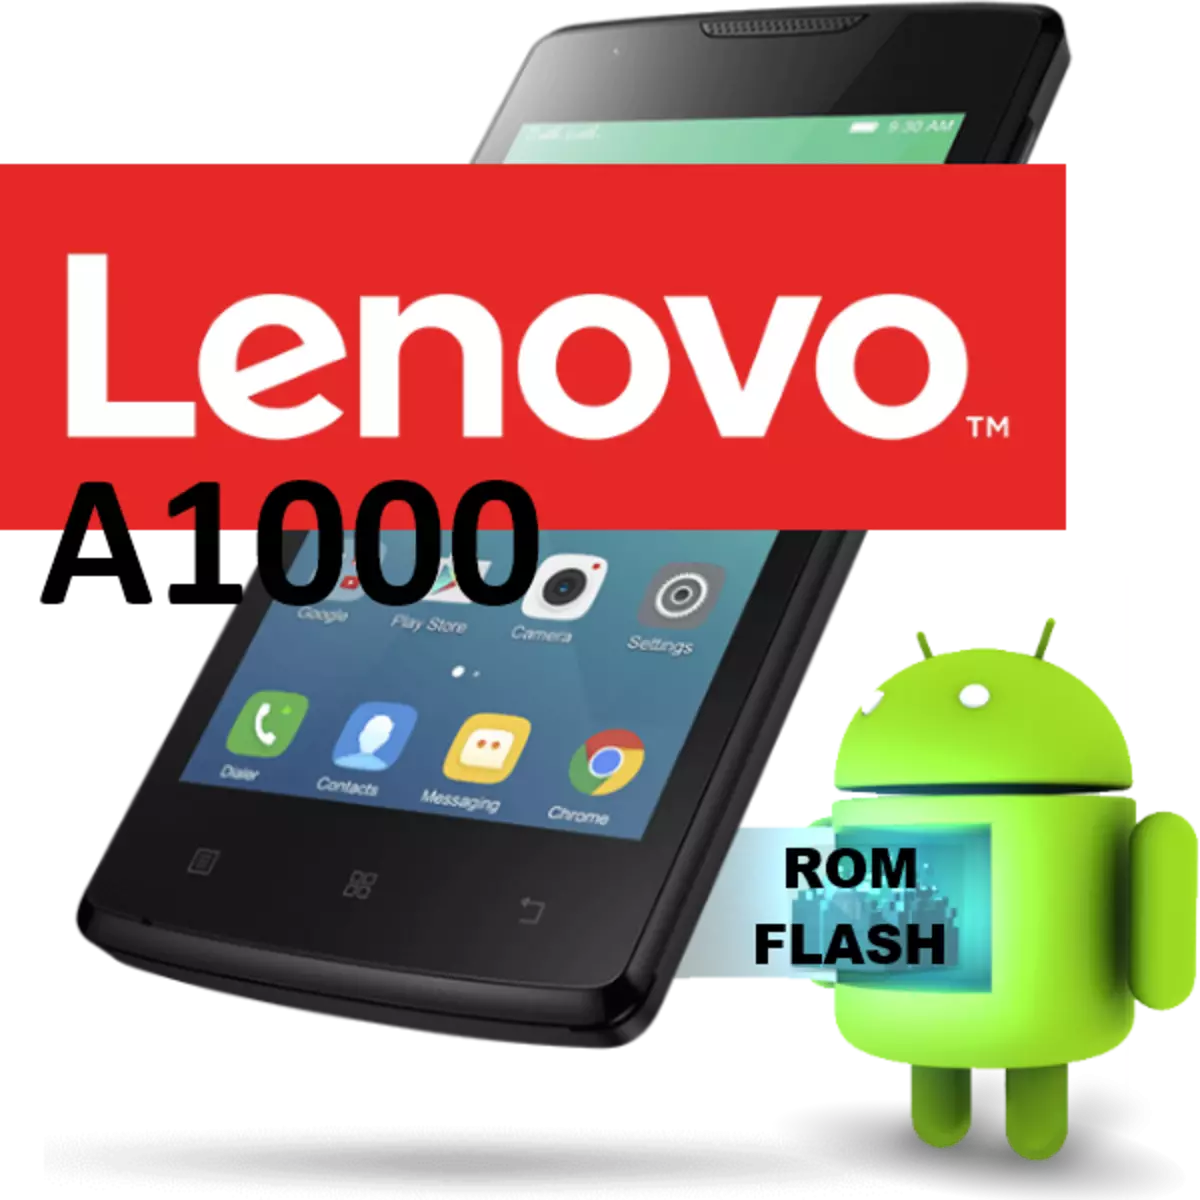 កម្មវិធីបង្កប់ Lenovo A1000